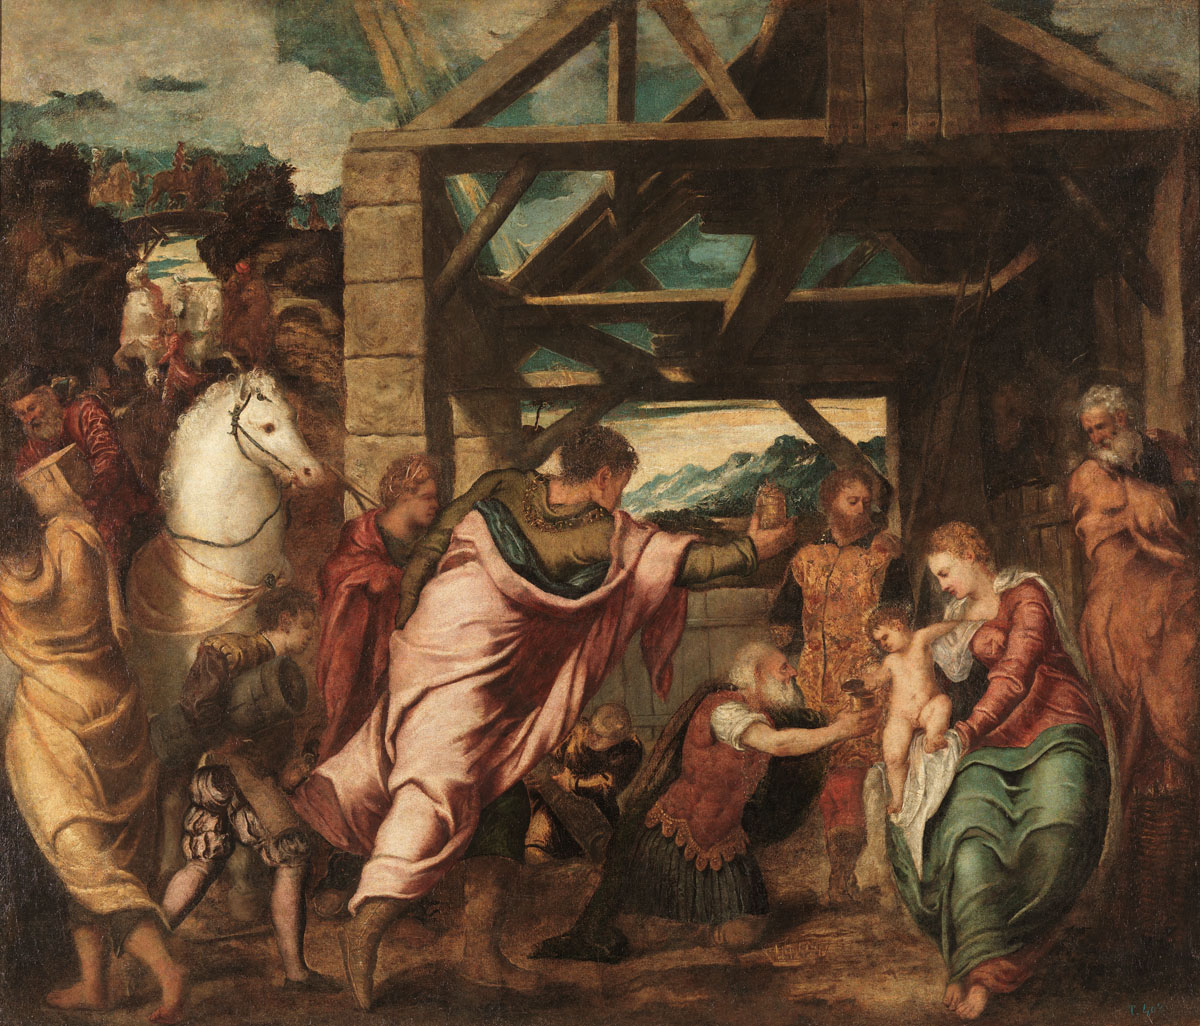 Tintoretto, Adorazione dei magi (1538-1539 circa; olio su tela, 174 x 203 cm; Madrid, Museo Nacional del Prado)
